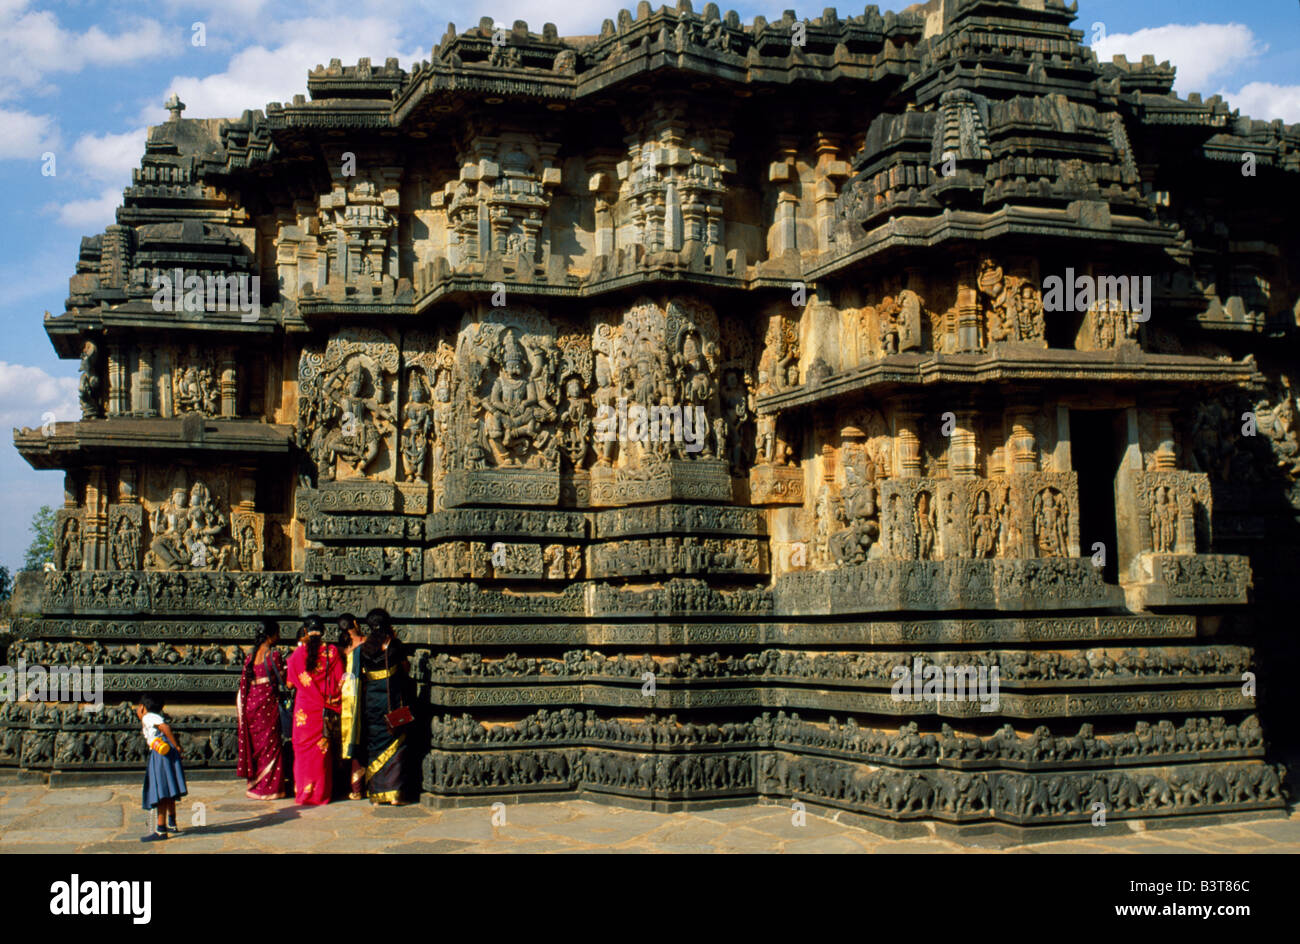 L'Inde, Karnataka, Halebid. Le 12e siècle Hoysaleshvara temple, construit par le pouvoir de la dynastie Hoysala, bénéficie d'une immense quantité Banque D'Images